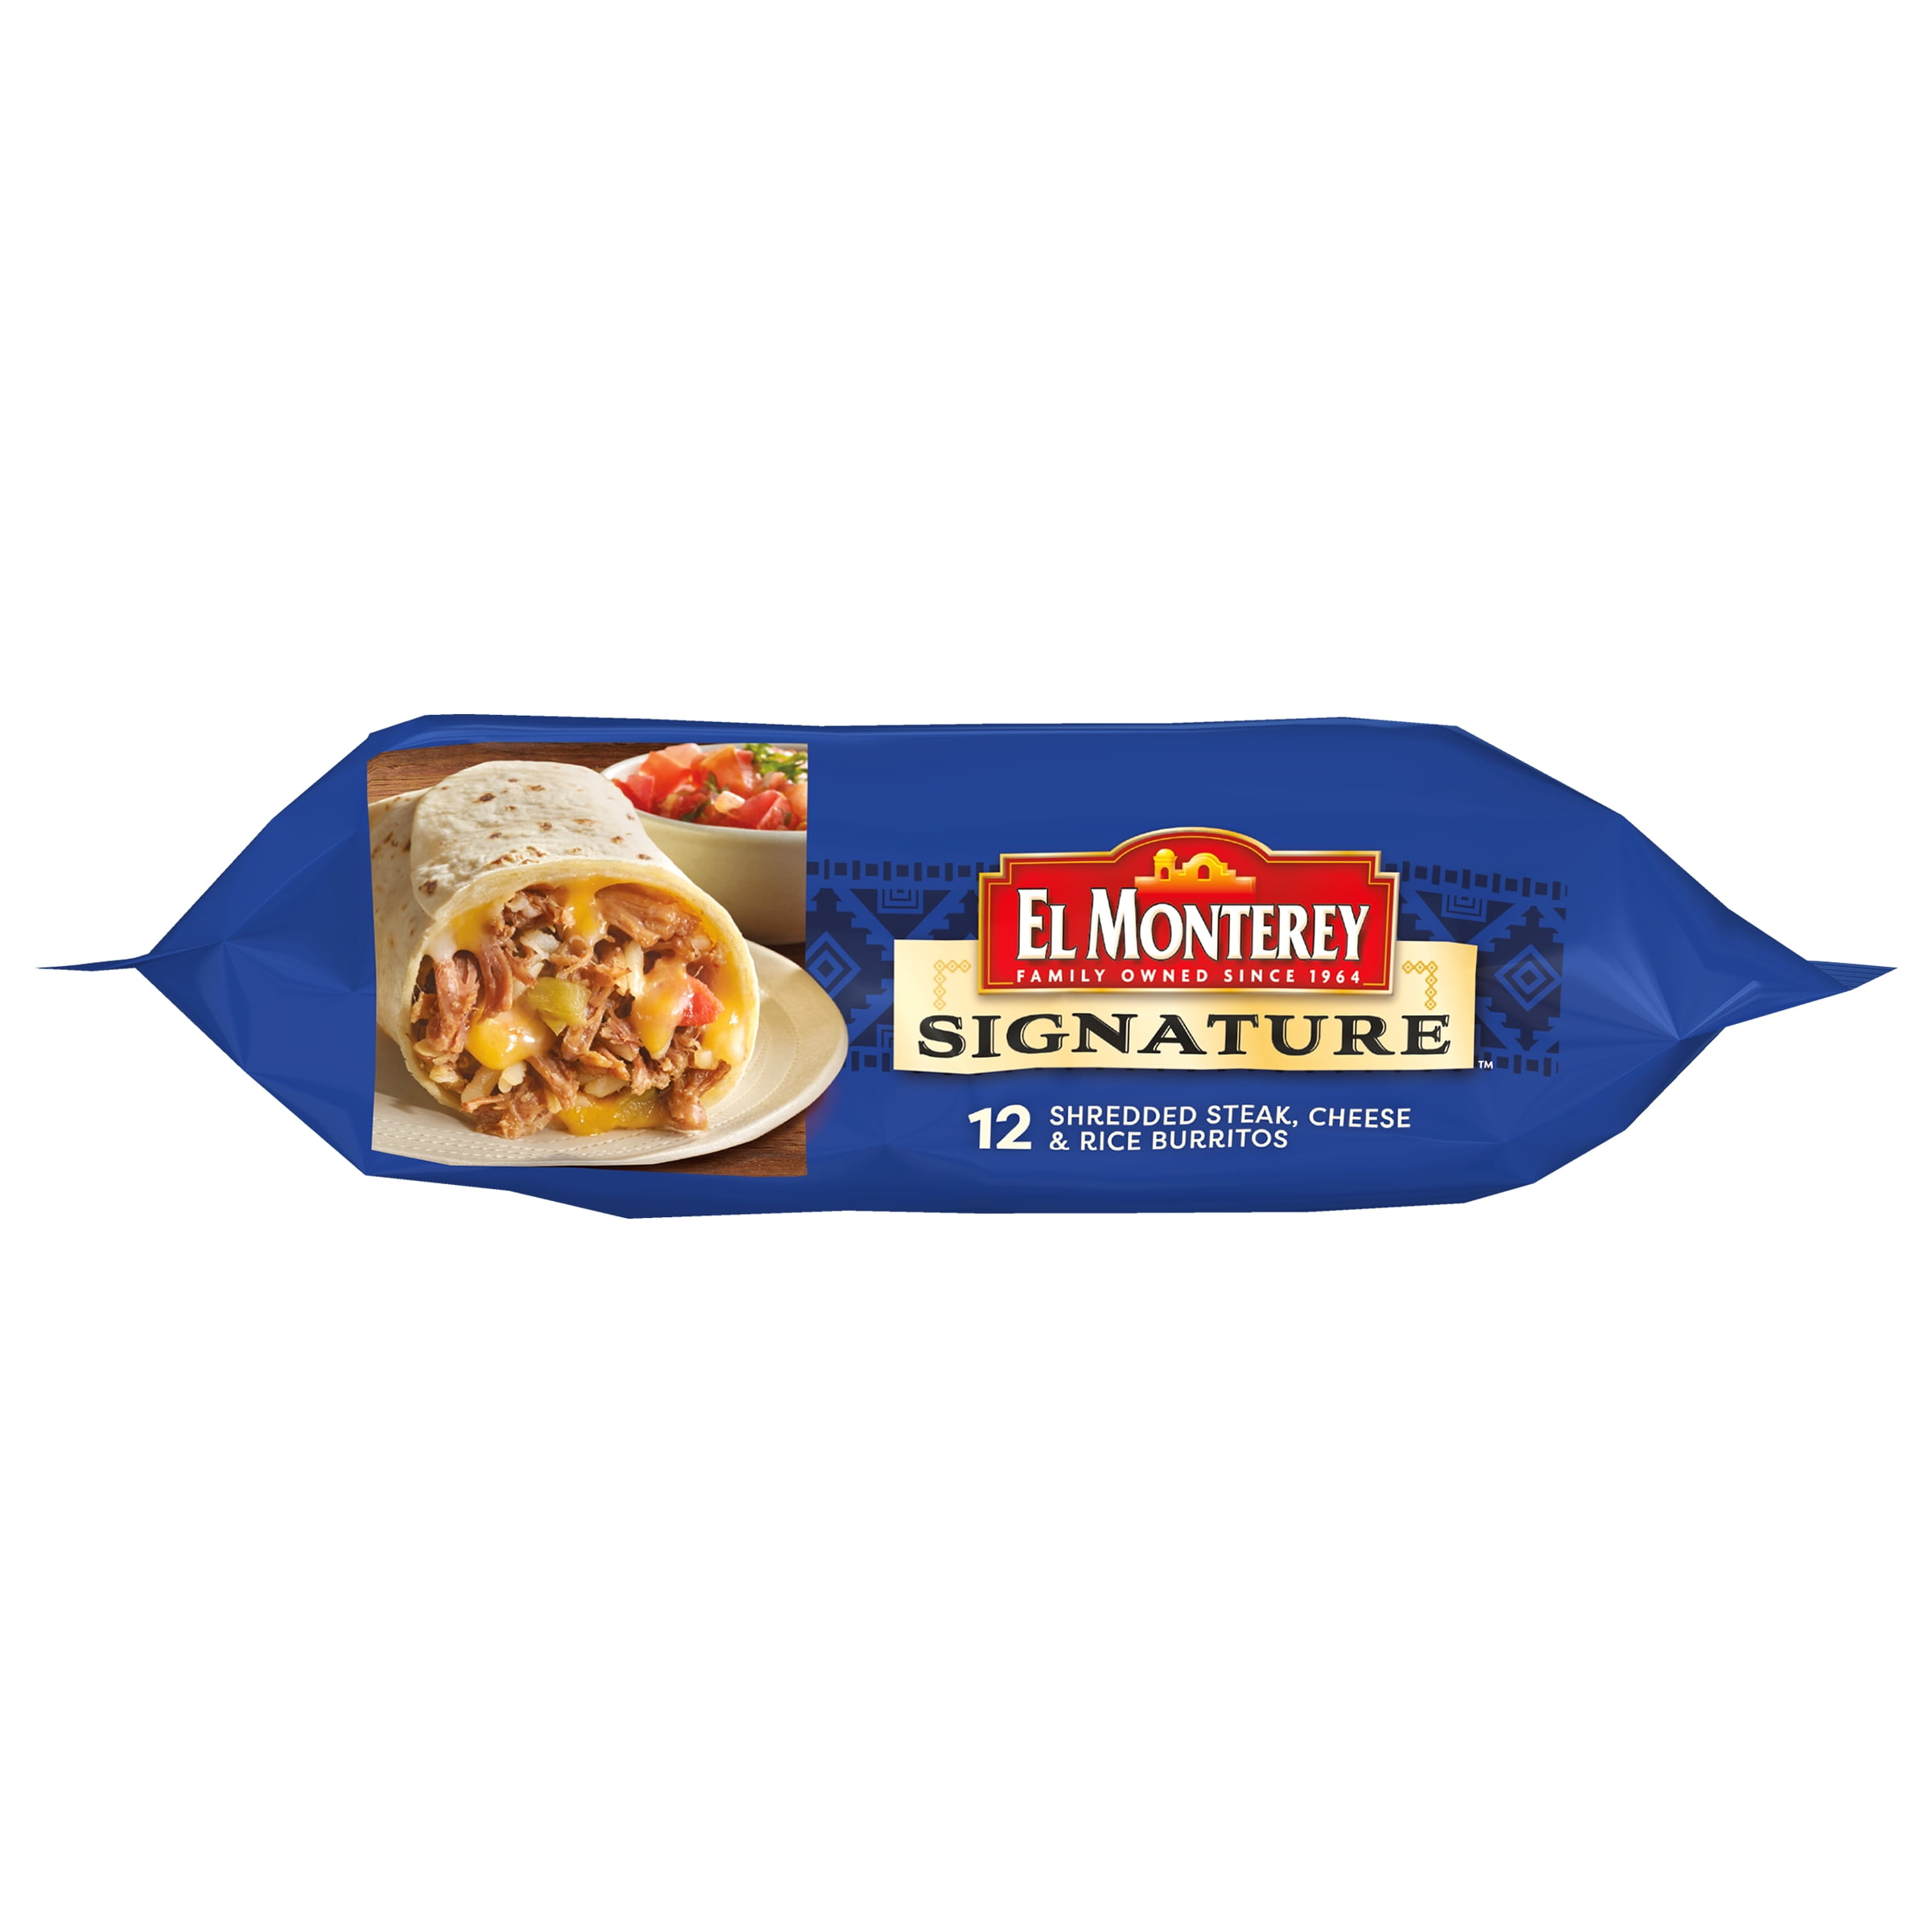 El Monterey Burritos, Variety, 30 ct